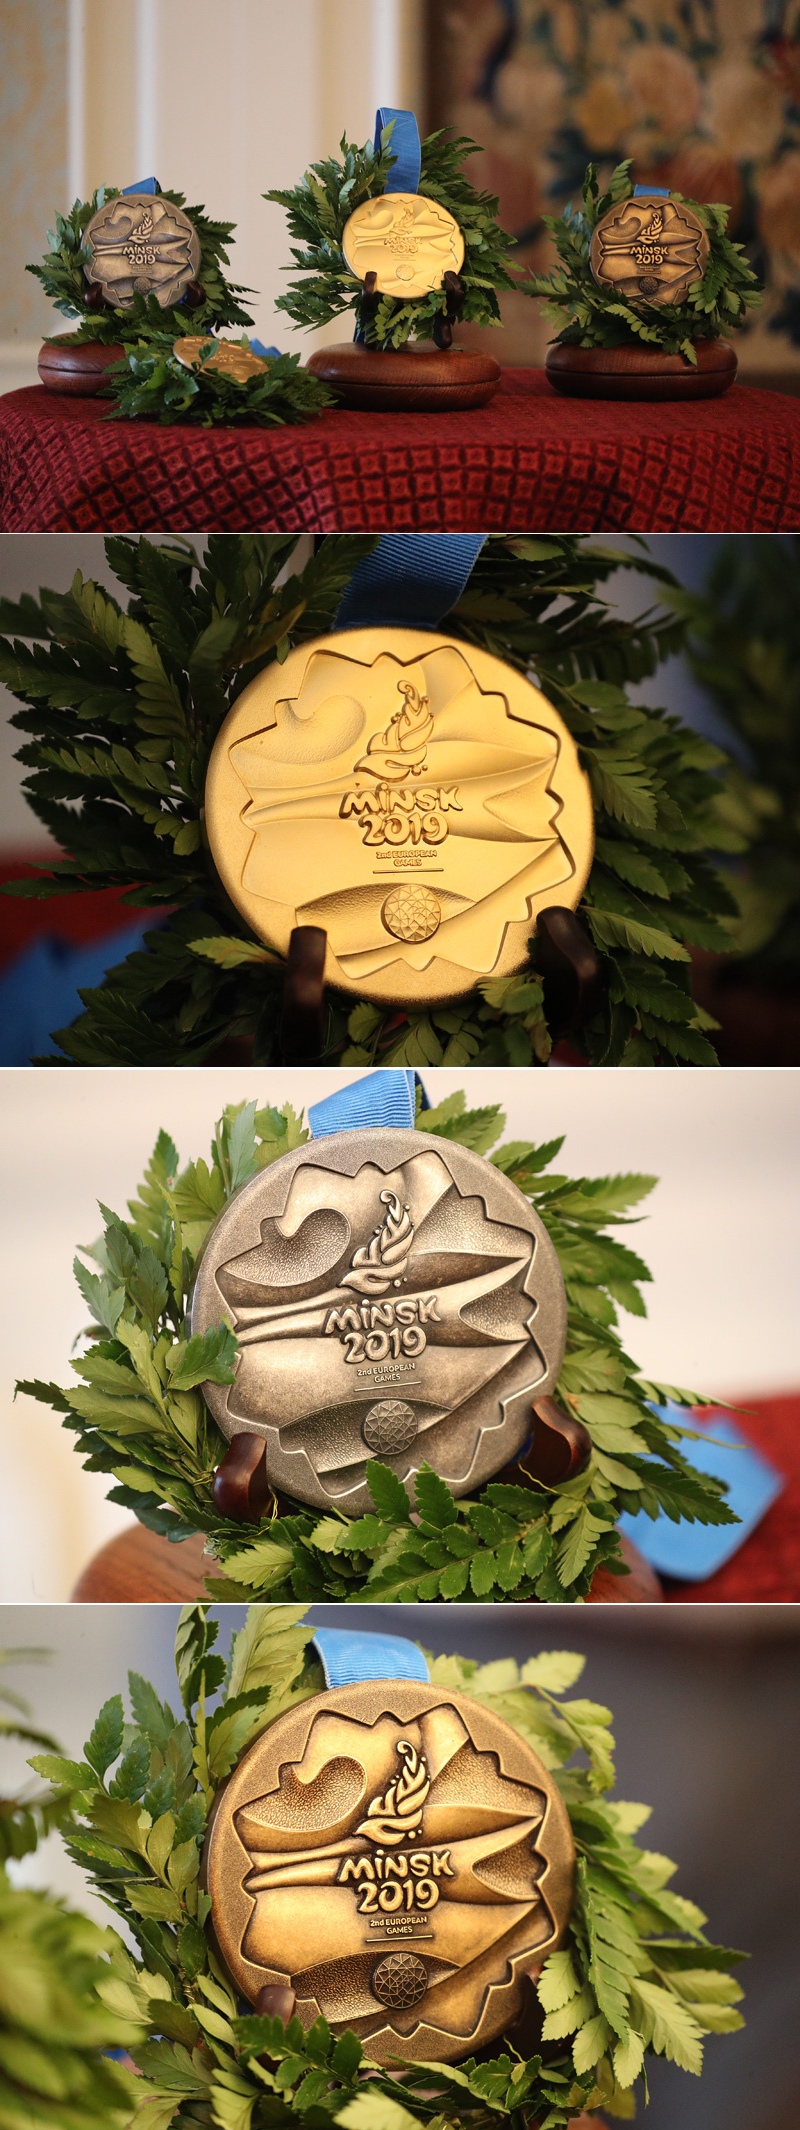 第二届欧运会奖牌造型在米尔城堡展出